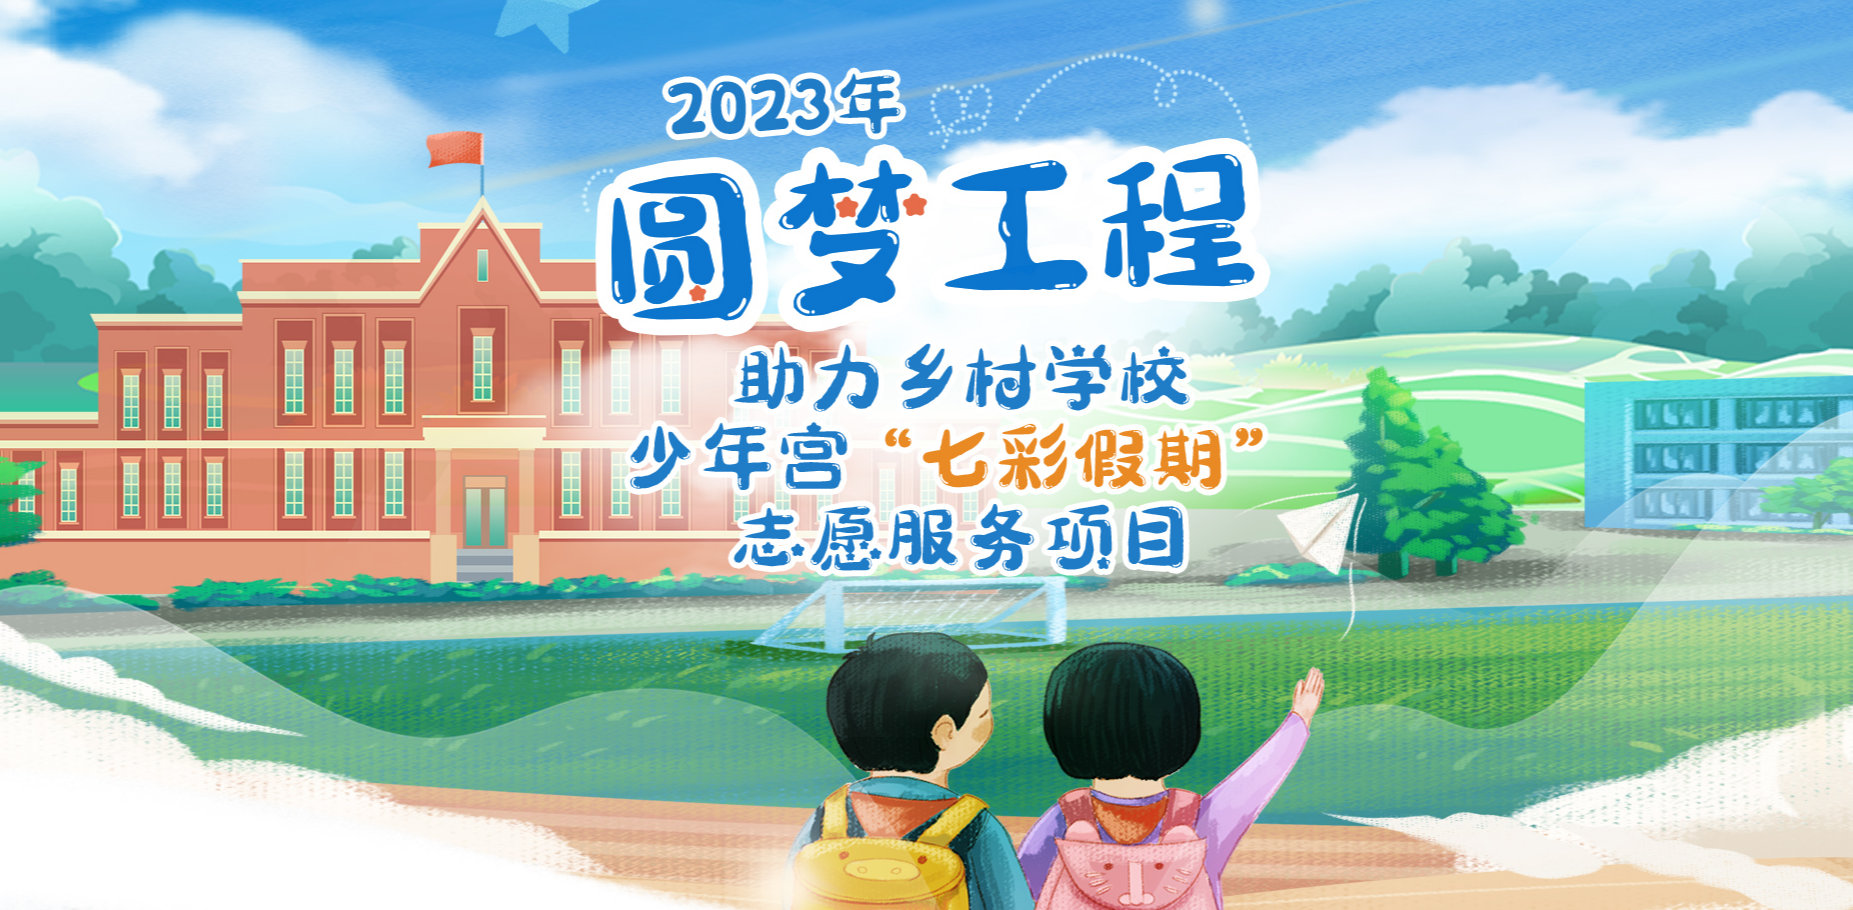 2023年“圆梦工程”助力乡村学校少年宫“七彩假期”志愿服务项目